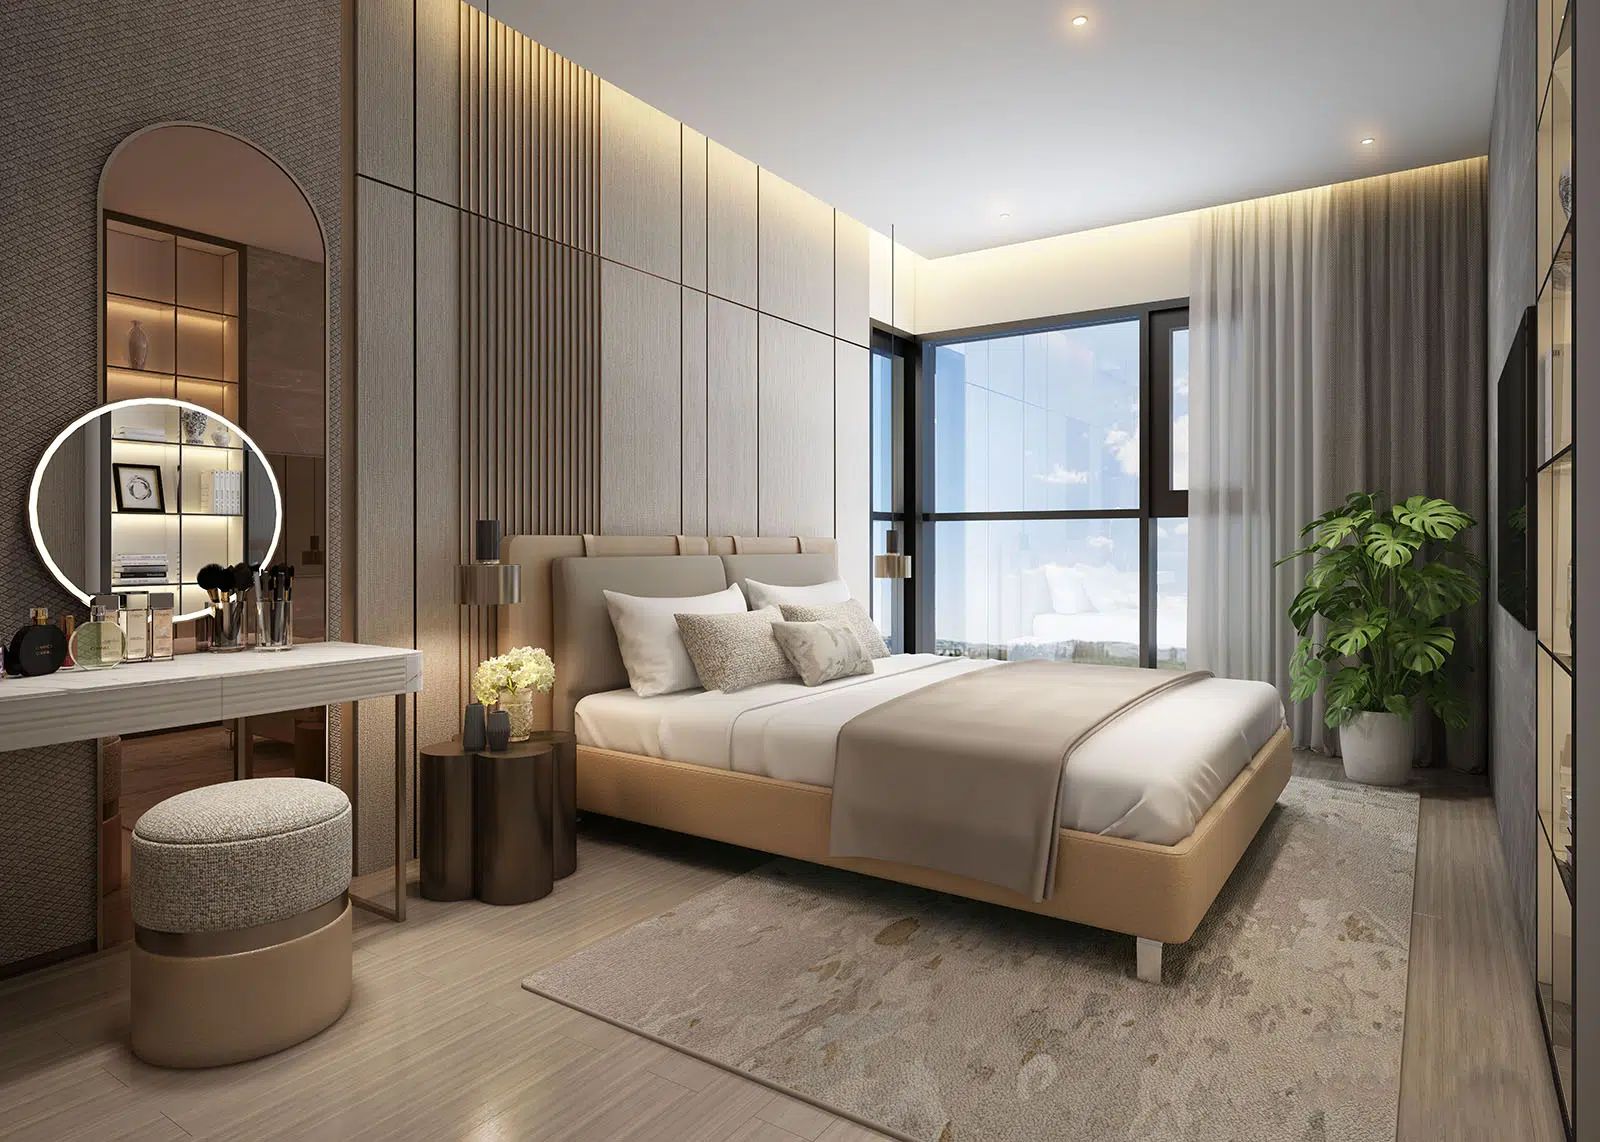 Giá thuê căn hộ 3 phòng ngủ đắt nhất quận Ba Đình đang là bao nhiêu?